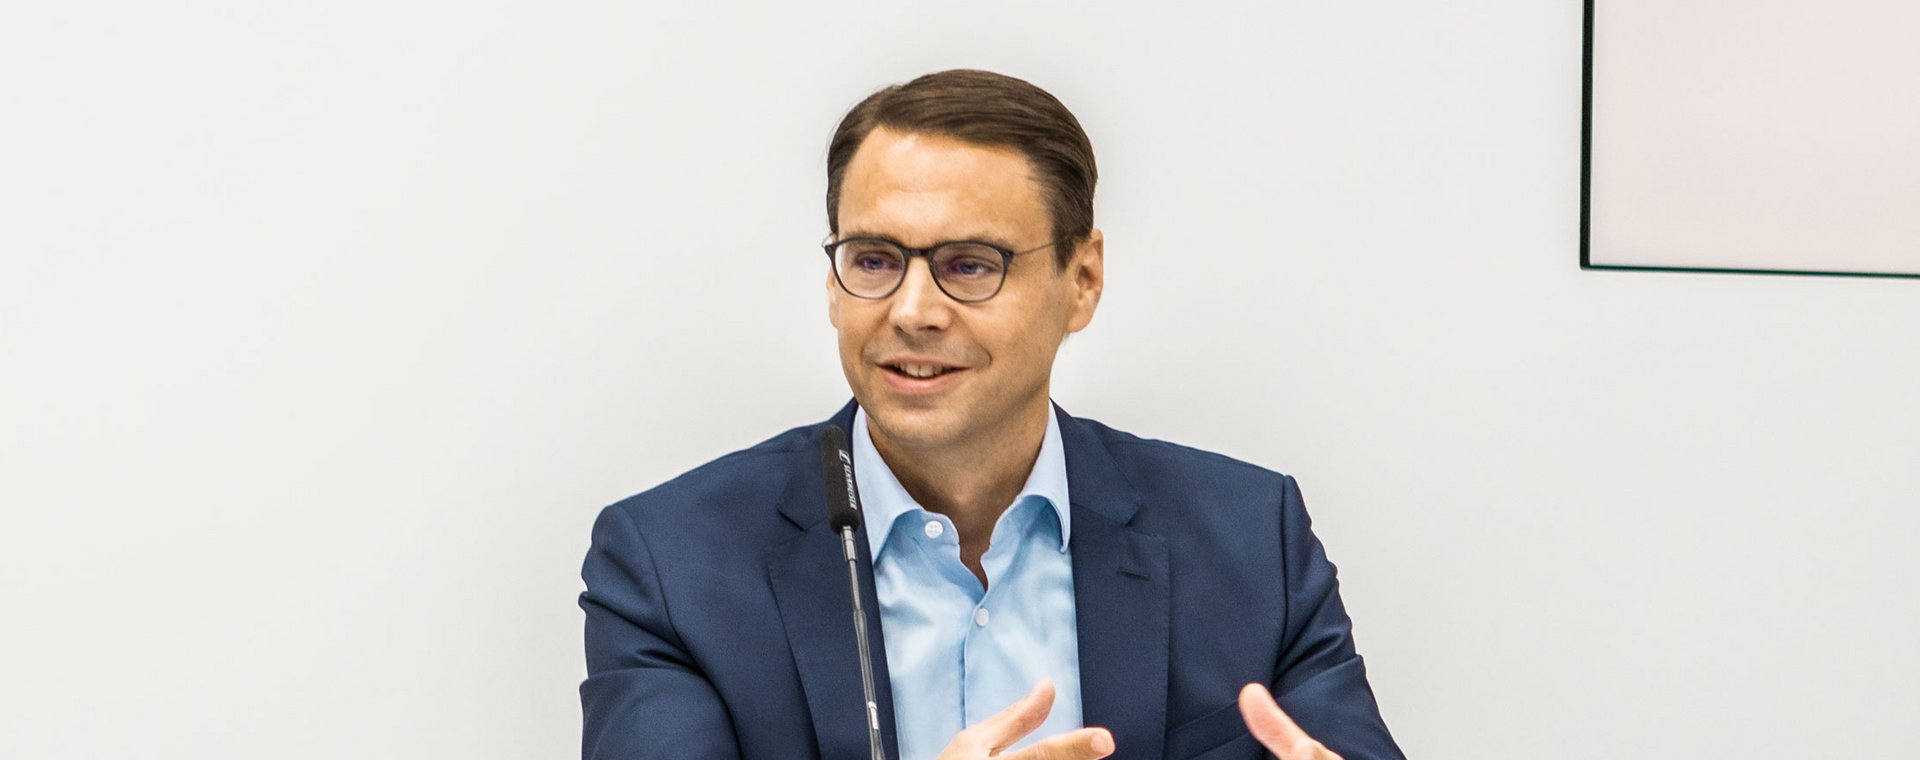 Matthias Baltin, prezes Allianz Polska.